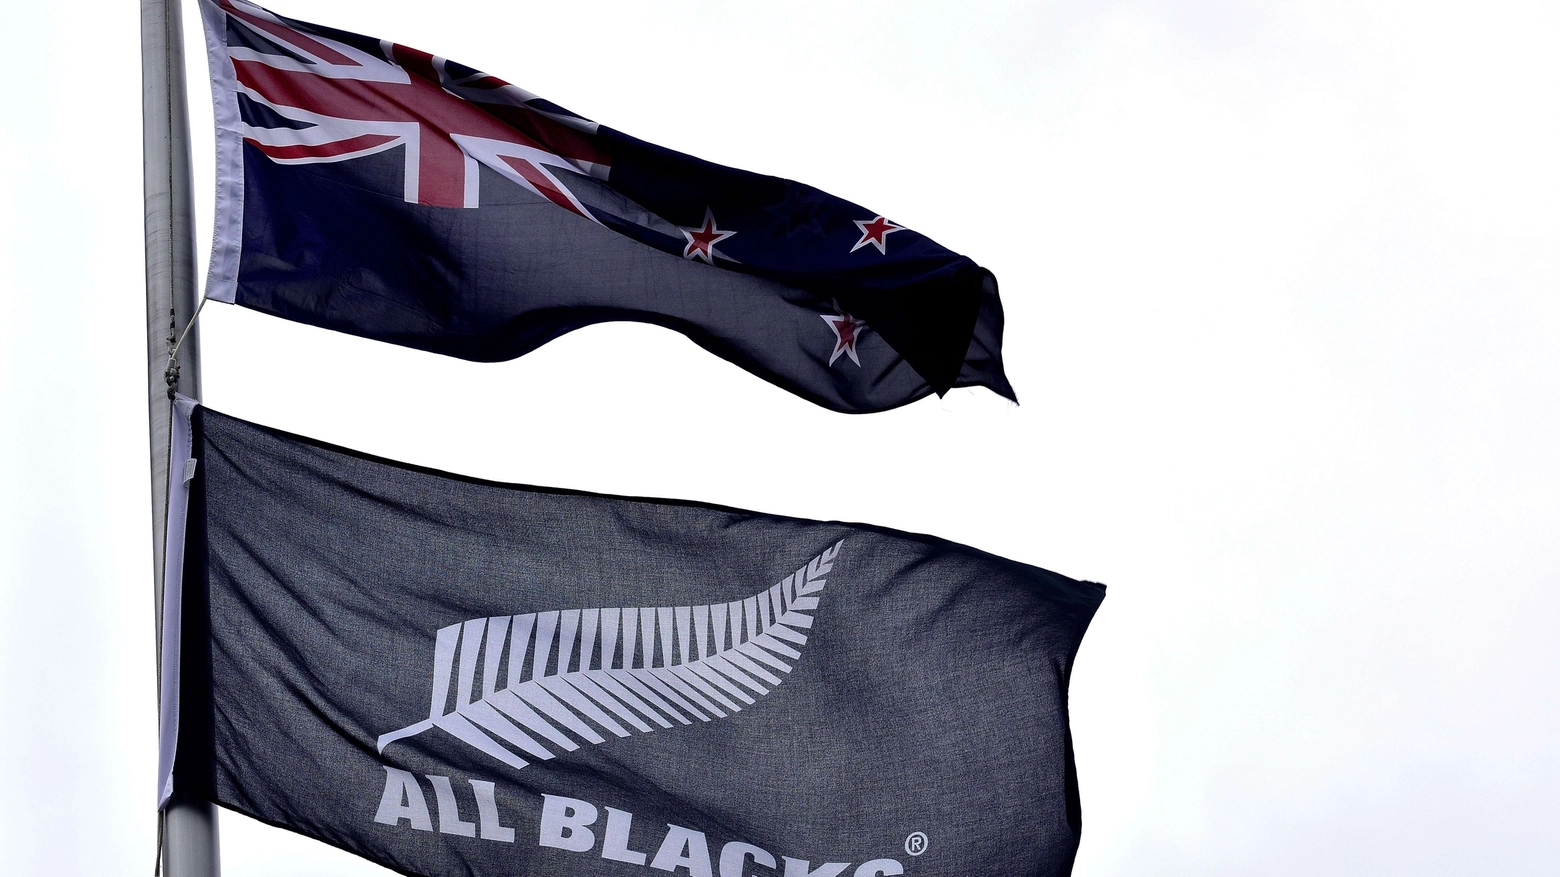 La bandiera degli All Blacks, campioni del mondo di rugby (AFP)